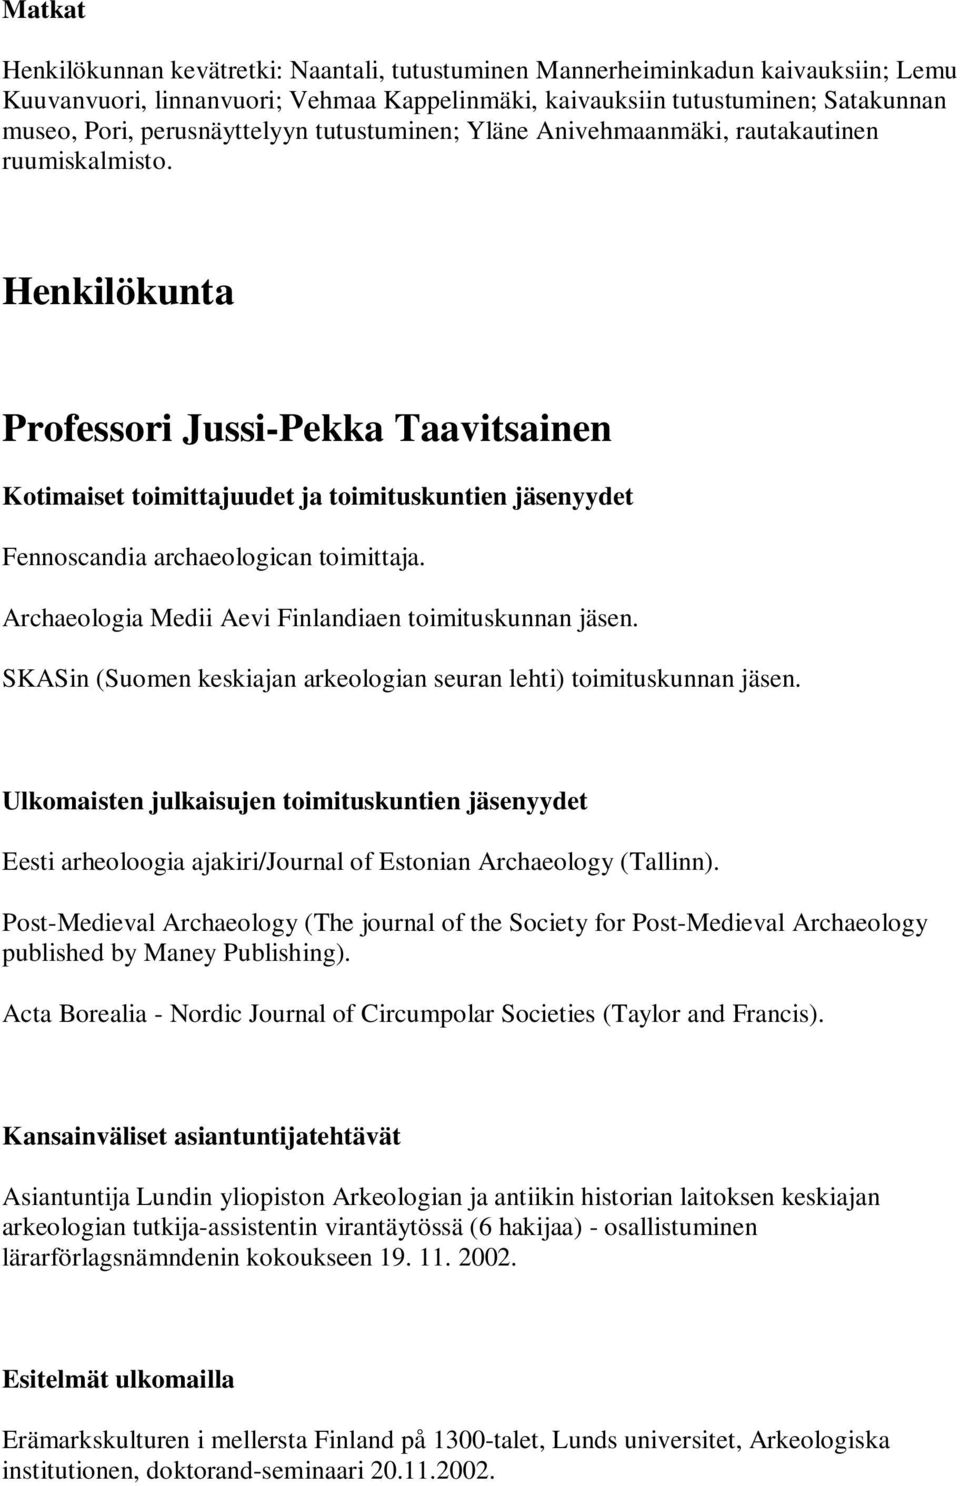 Henkilökunta Professori Jussi-Pekka Taavitsainen Kotimaiset toimittajuudet ja toimituskuntien jäsenyydet Fennoscandia archaeologican toimittaja.